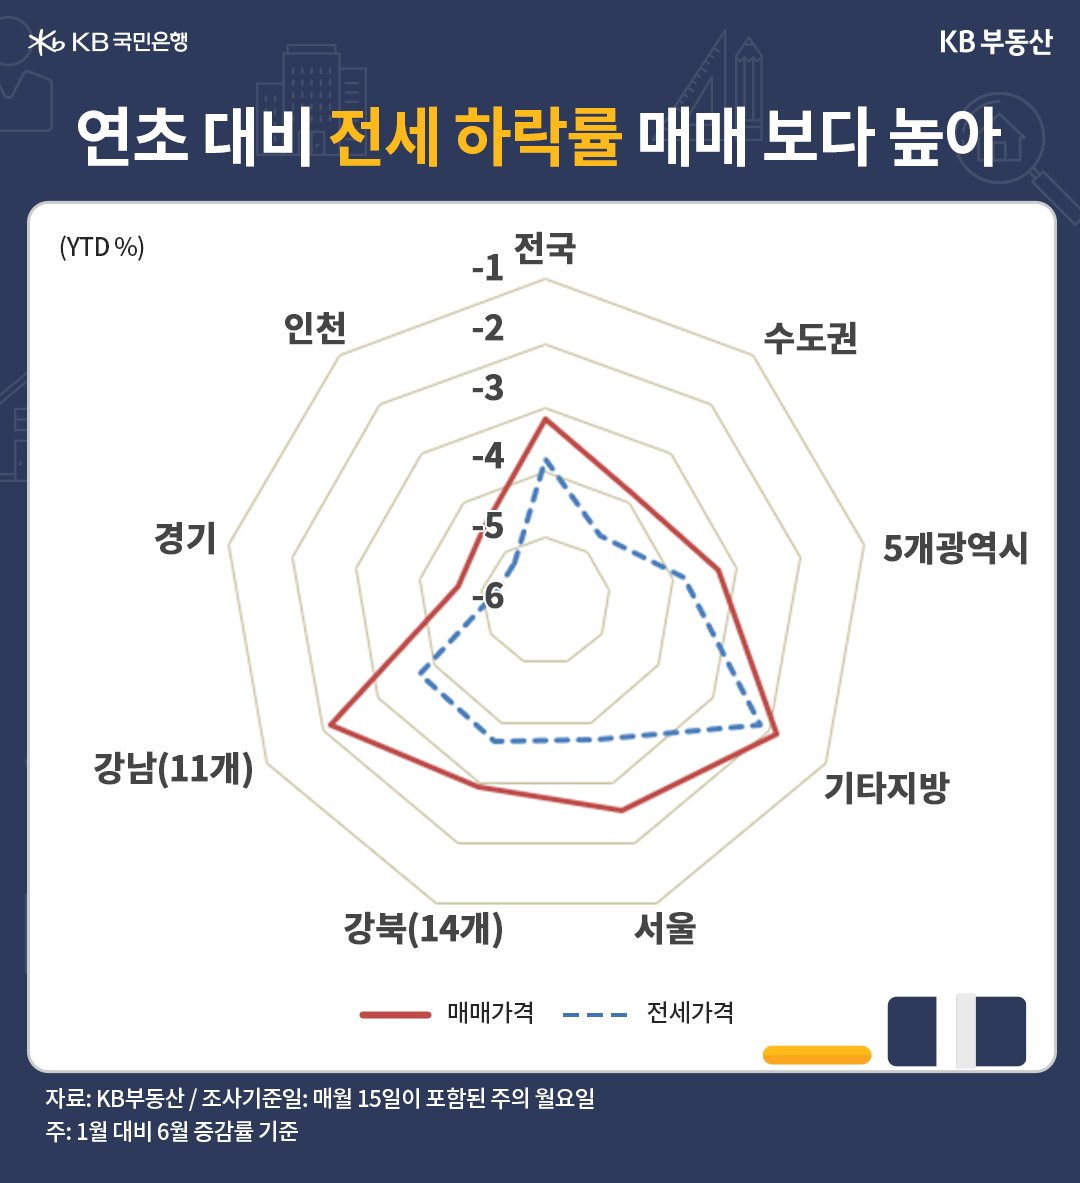 6월 전국 주택전세가격 지수는 91.7로 전년동기 대비* -9.1% 하락했습니다. 월세전환으로 인한 전세수요 위축이 여전히 낙폭을 키웠습니다. 한편 전월 대비로는 -0.22% 하락해 11개월째 약세지만, 하락률이 5개월째 줄었습니다. 공급물량 증가로 전세 매물이 늘었던 서울과 수도권의 매물 압력이 빠르게 완화됐습니다.